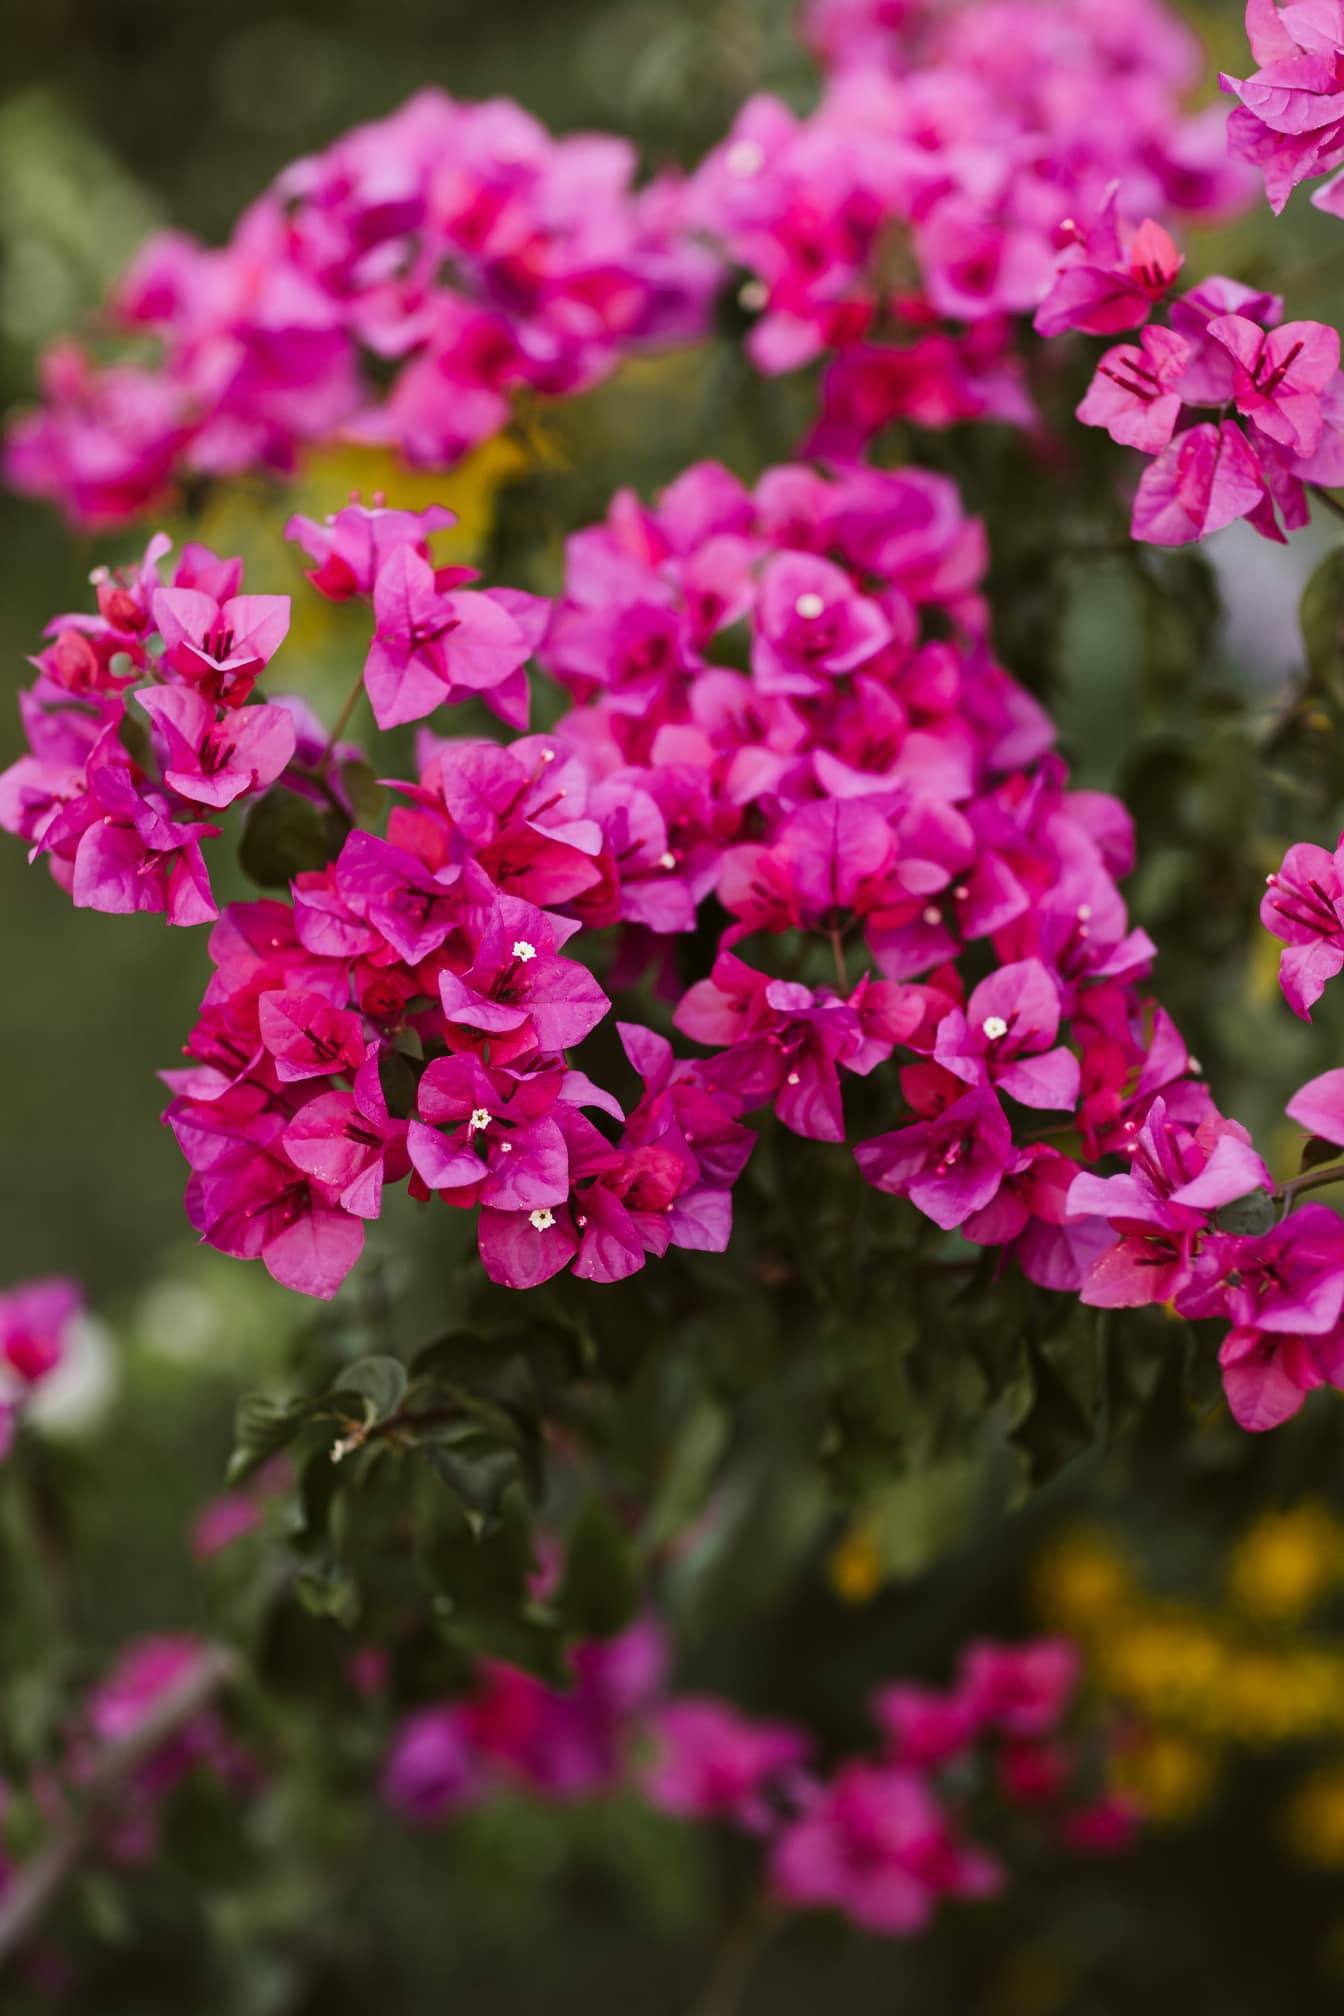 小九重葛或纸花 (Bougainvillea glabra) 粉红色花瓣灌木